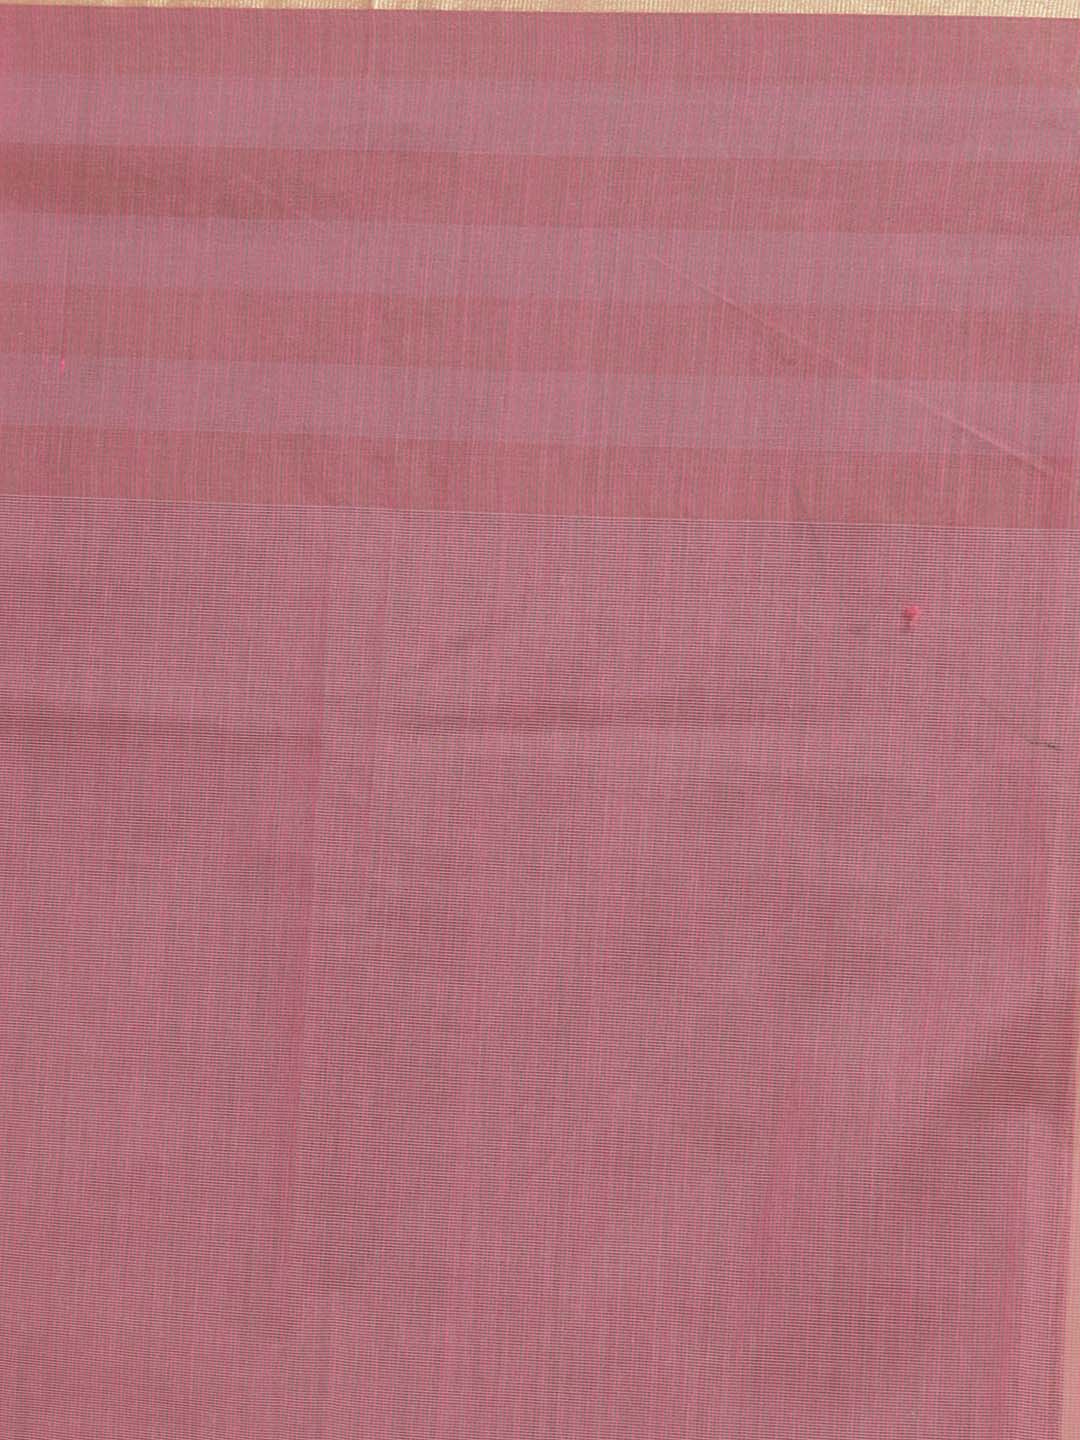 Indethnic Banarasi Pink Solid Daily Wear Saree - Saree Detail View